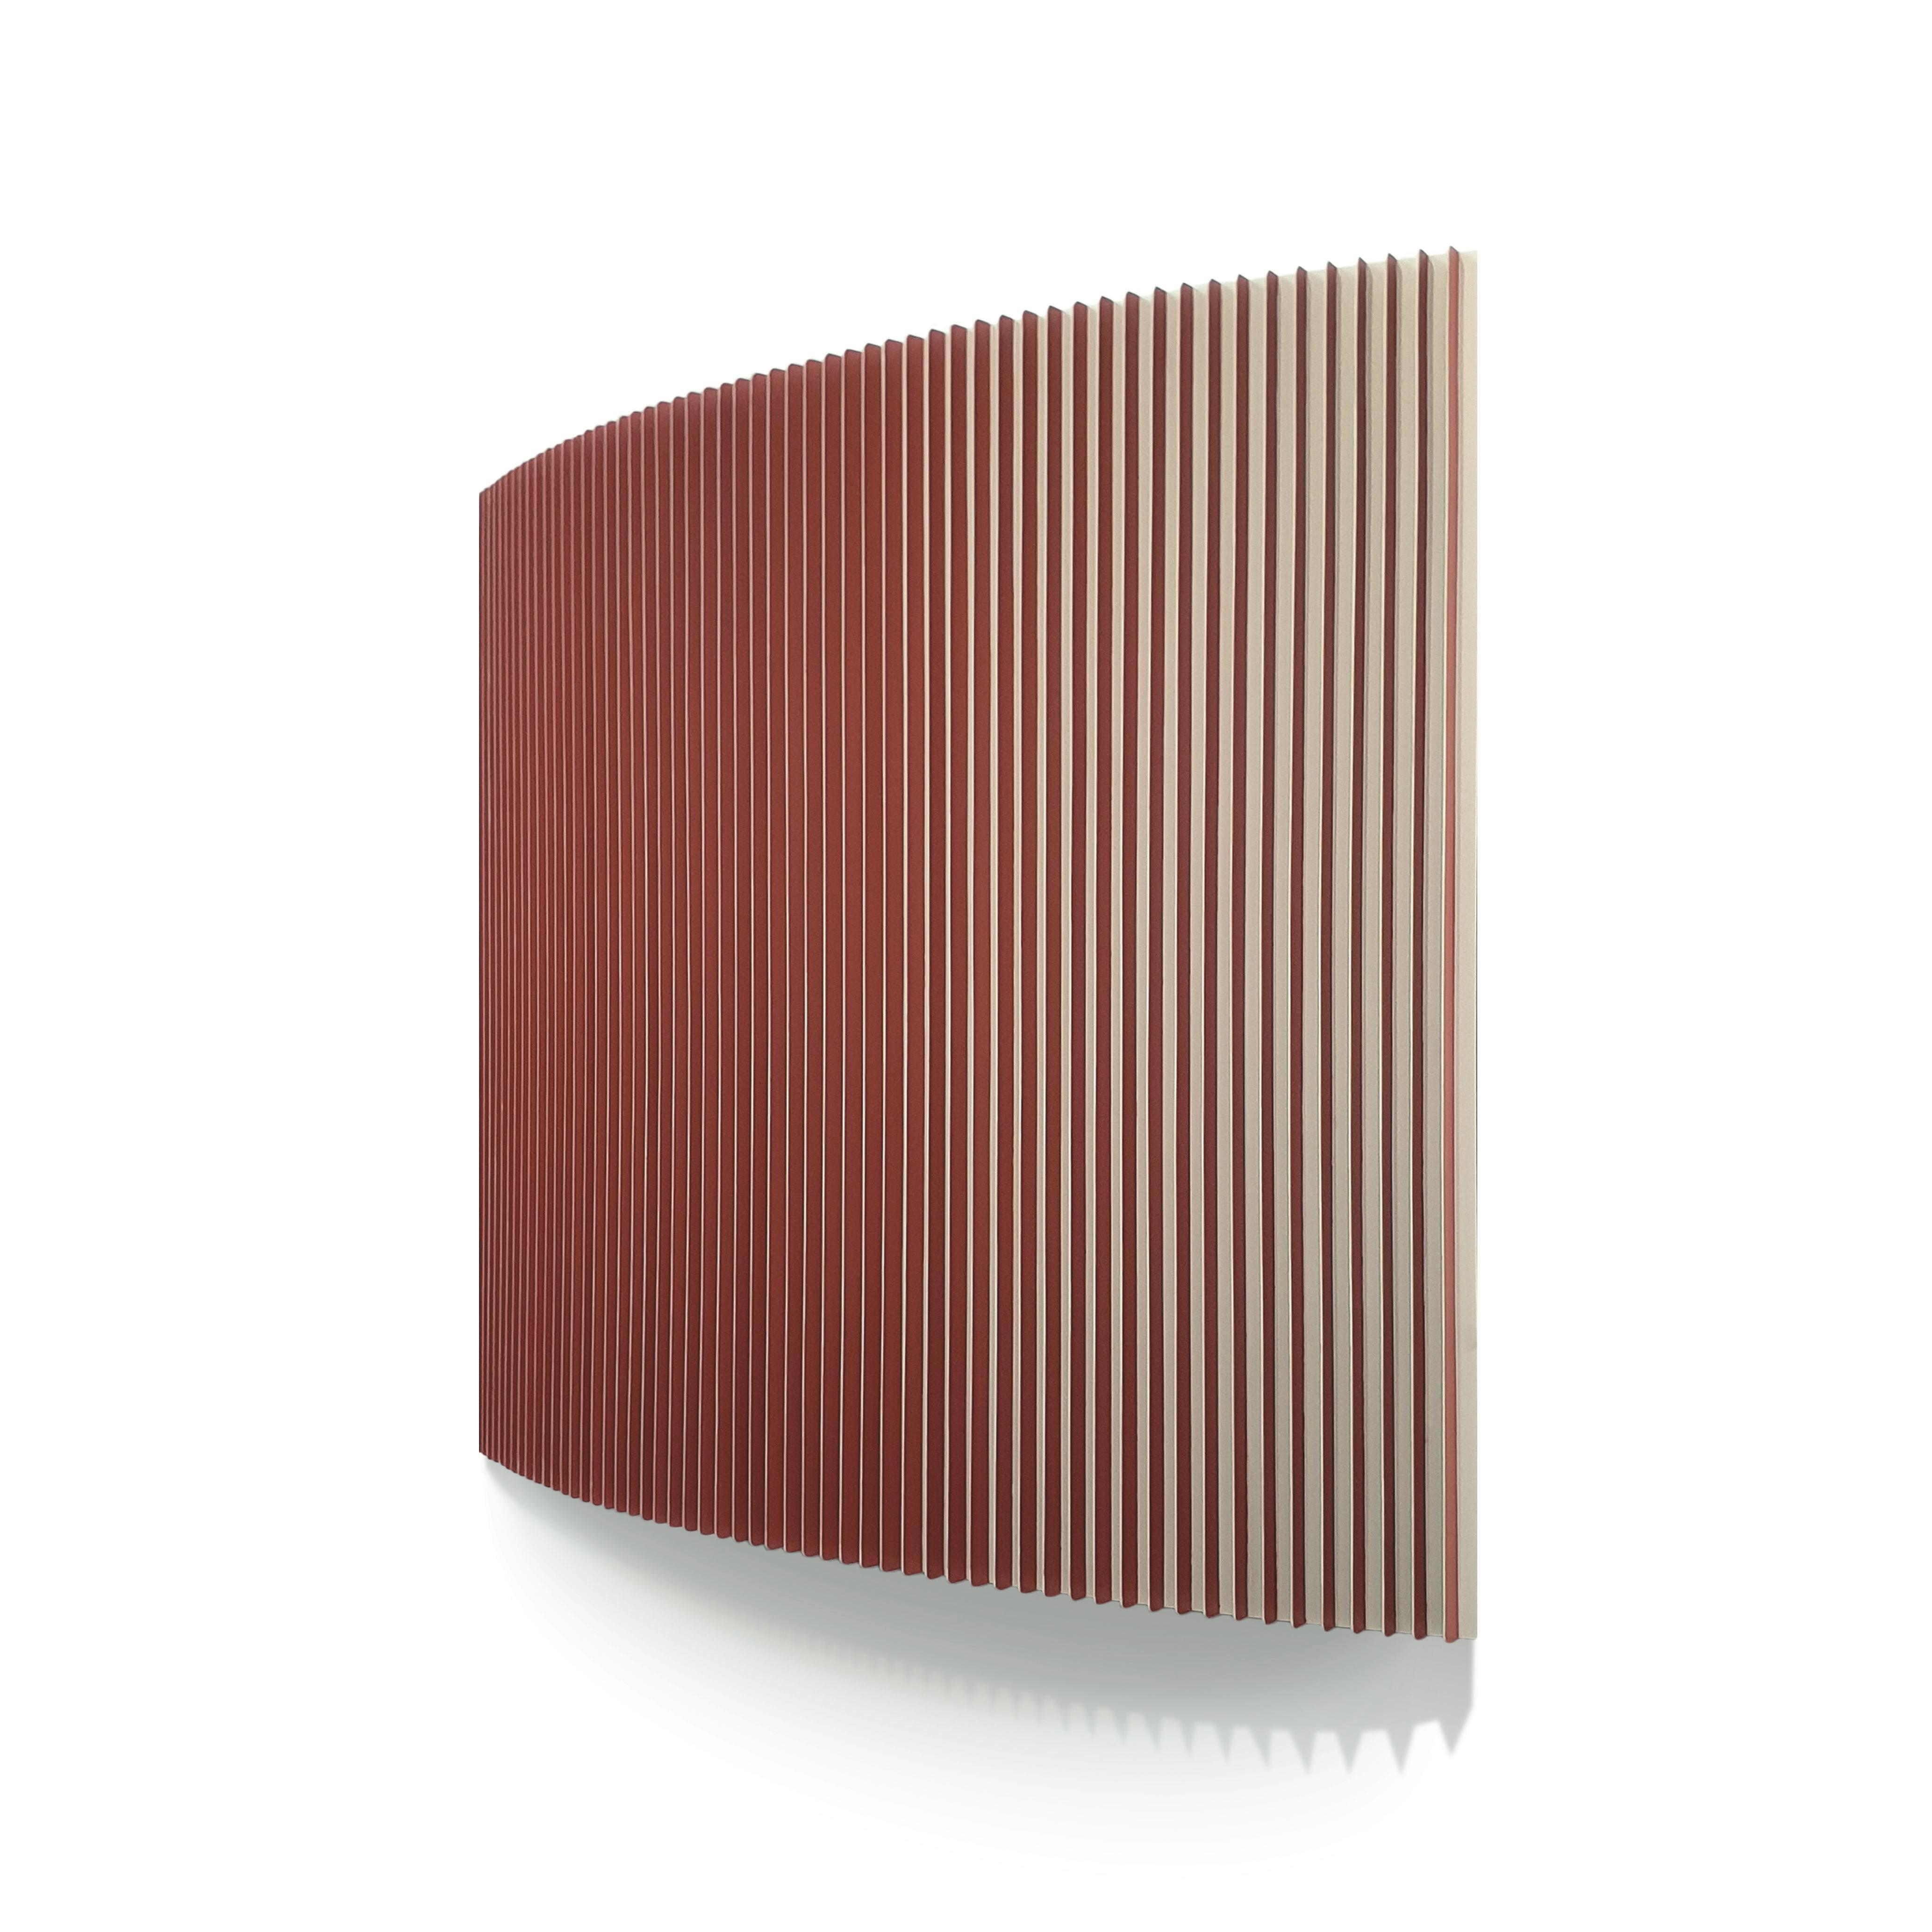 Spectrum III, 150 x 150 cm, Email auf Aluminium,  2021